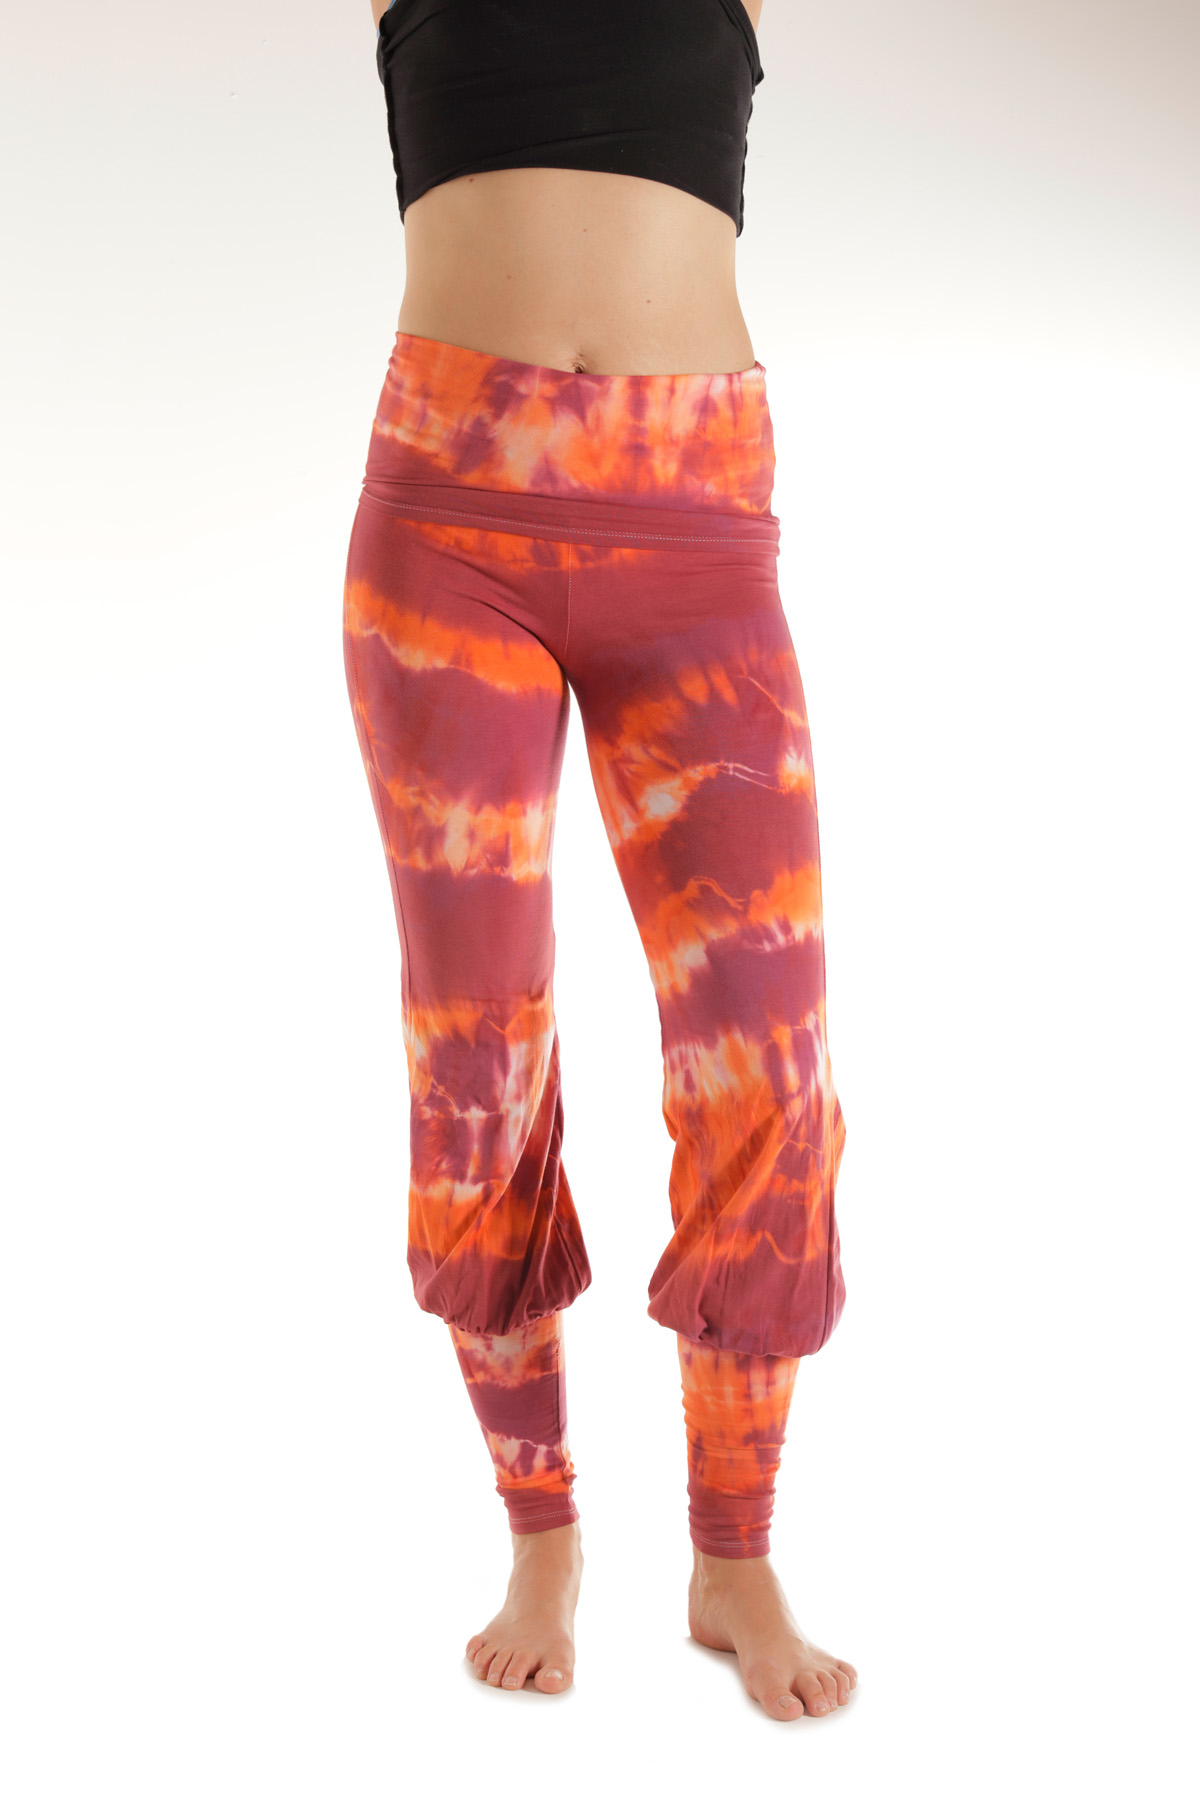 Blaze Celeste Pants | 88 Queen St Blaze tie dye Celeste Yoga pants